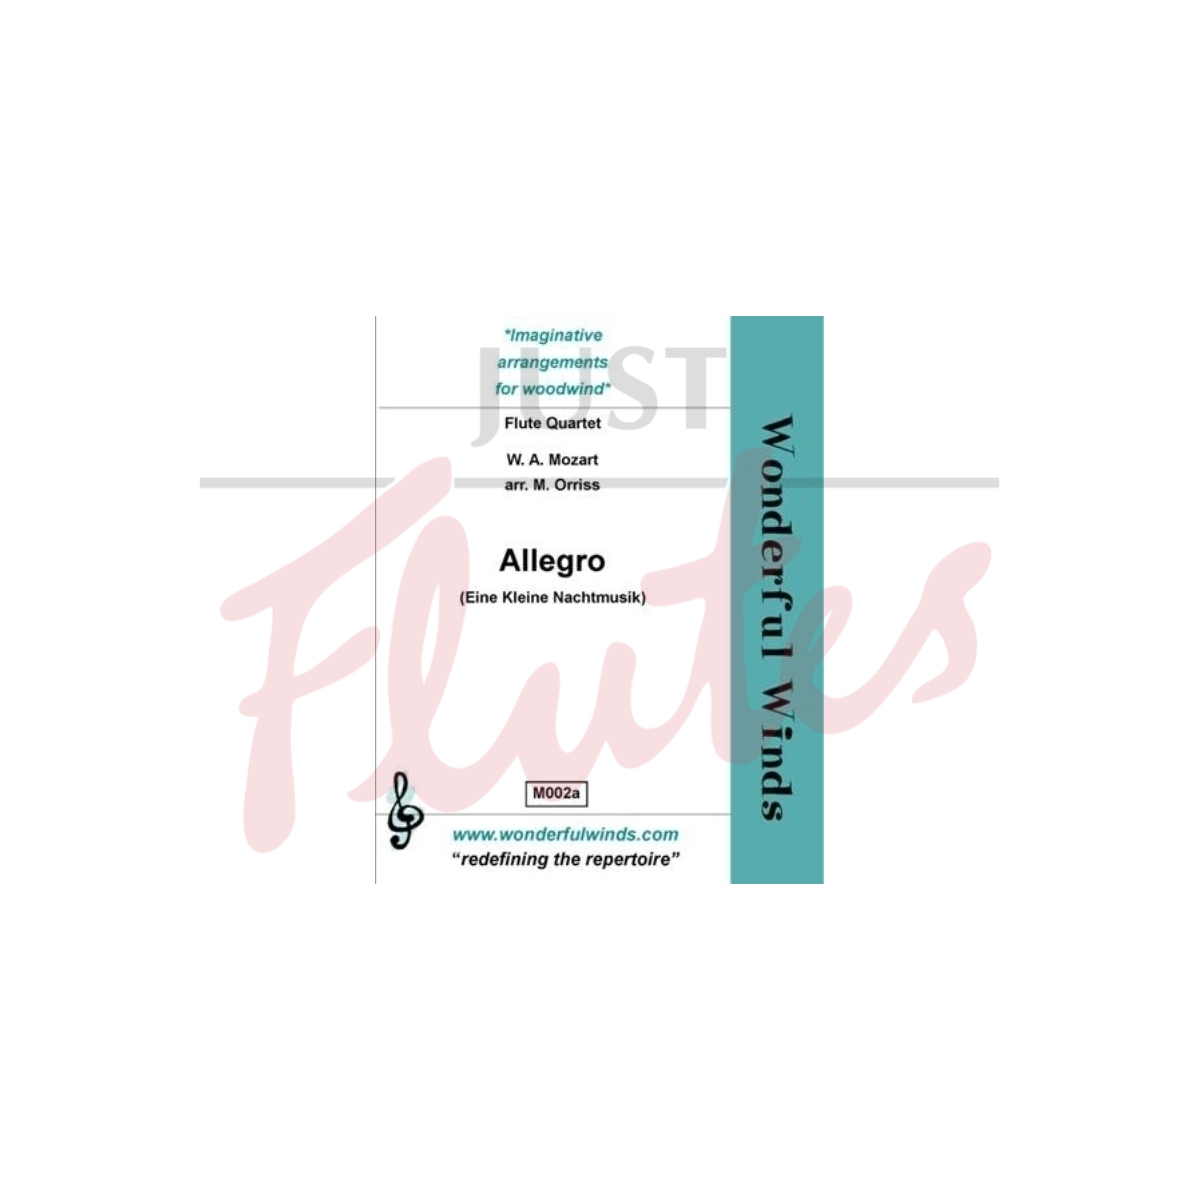 Allegro (Eine Kleine Nachtmusik) [4 Flutes]